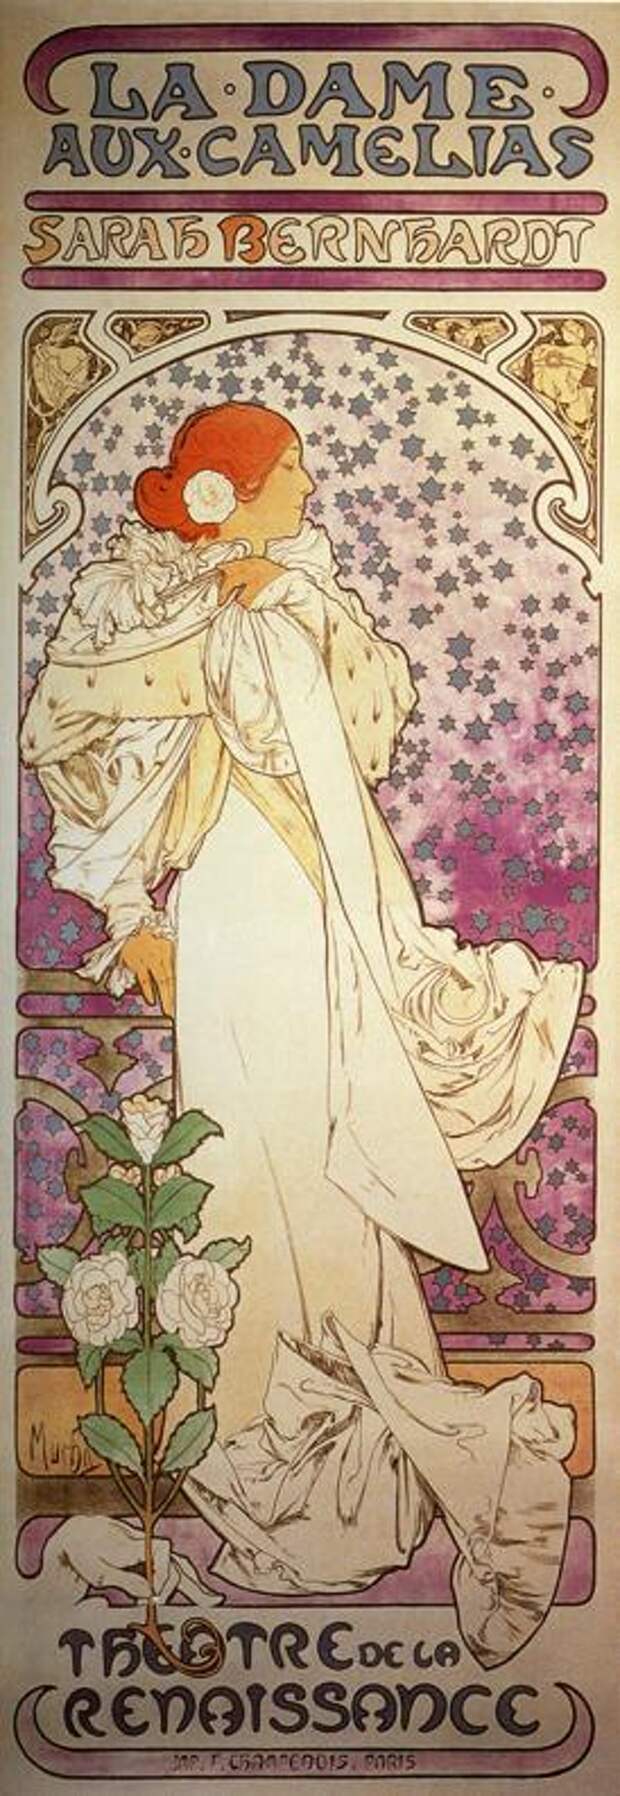 Дама с камелиями. Рекламный плакат  для Сары Бернар. 1896